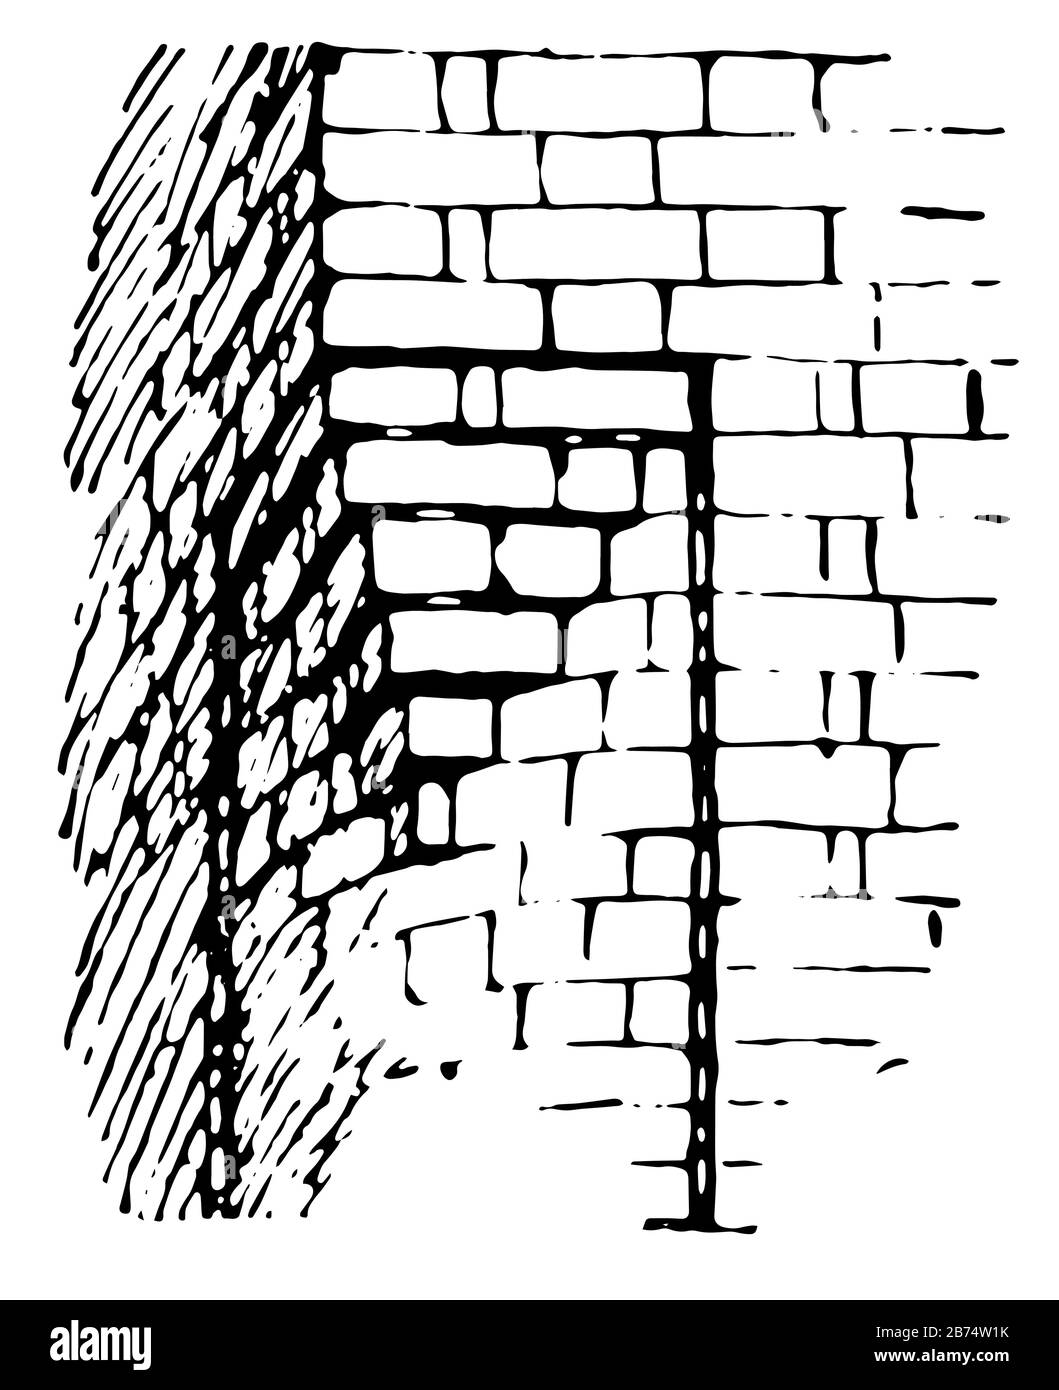 Corbel sert à la place de supports, de supports muraux, de murs de projection, d'architecture médiévale, de dessin vintage ou d'illustration de gravure. Illustration de Vecteur